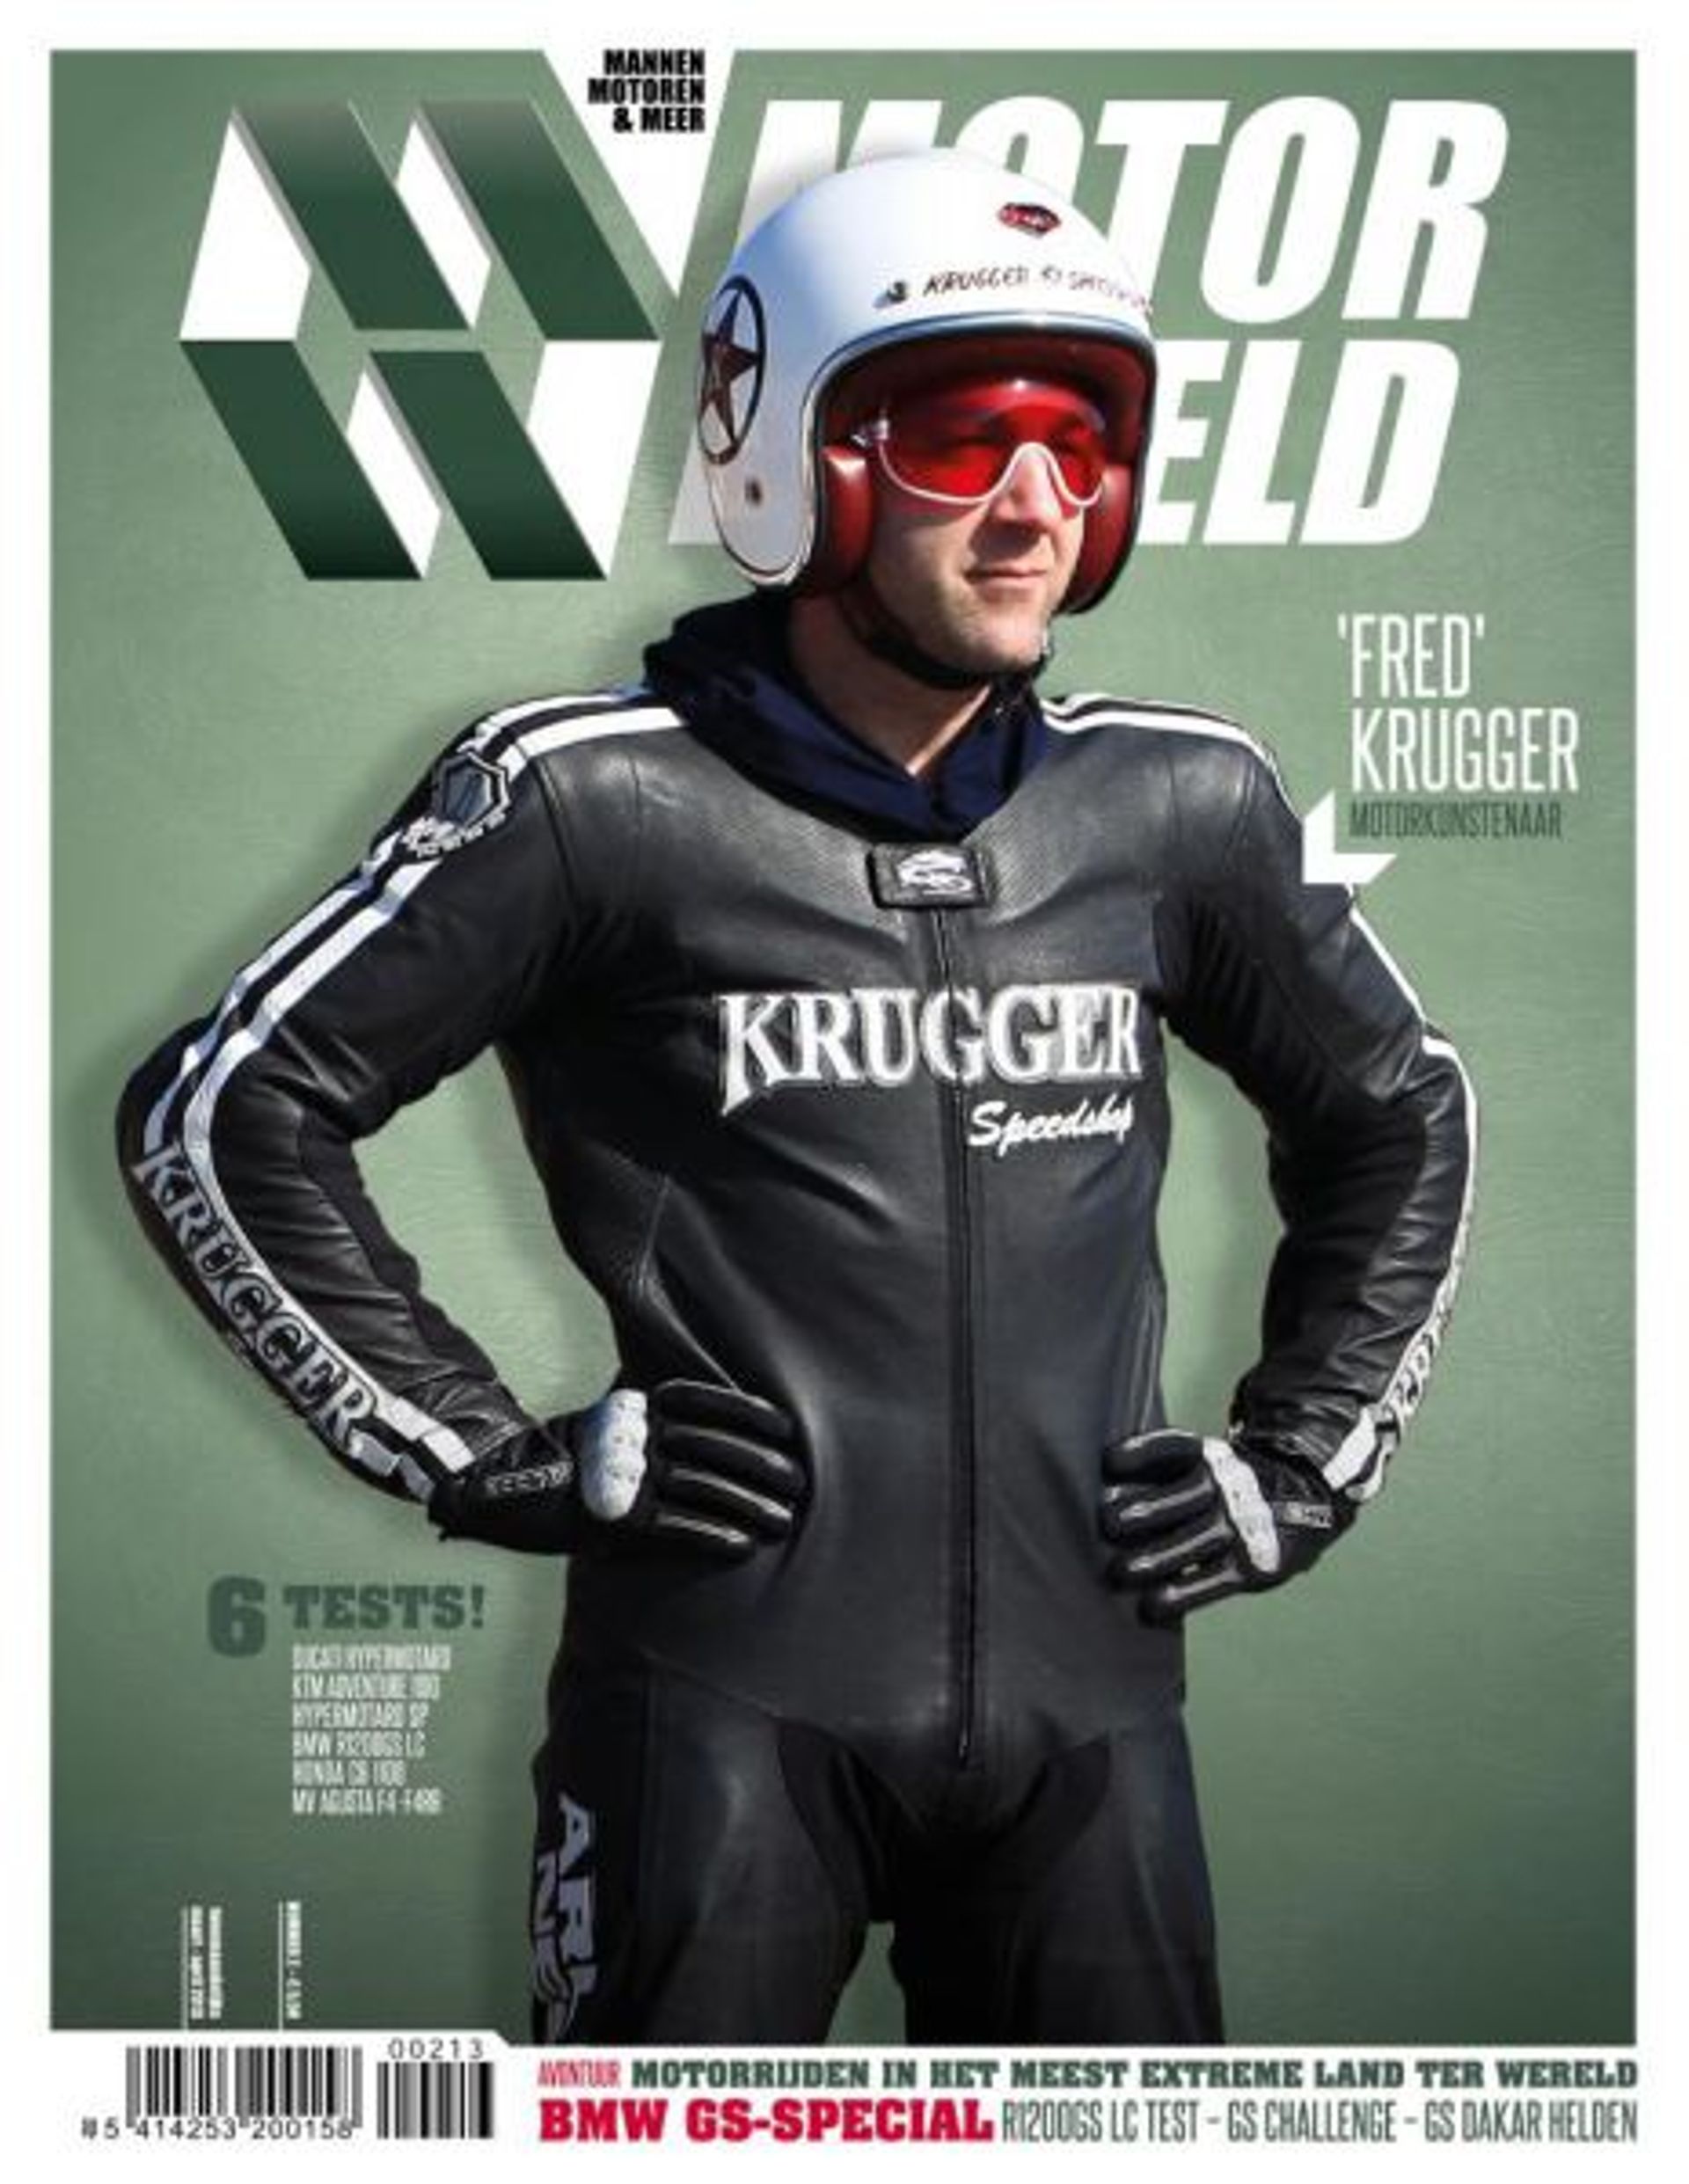 Fred Krugger, créateur de motos d'exception - La Belge histoire dans 7 à la Une